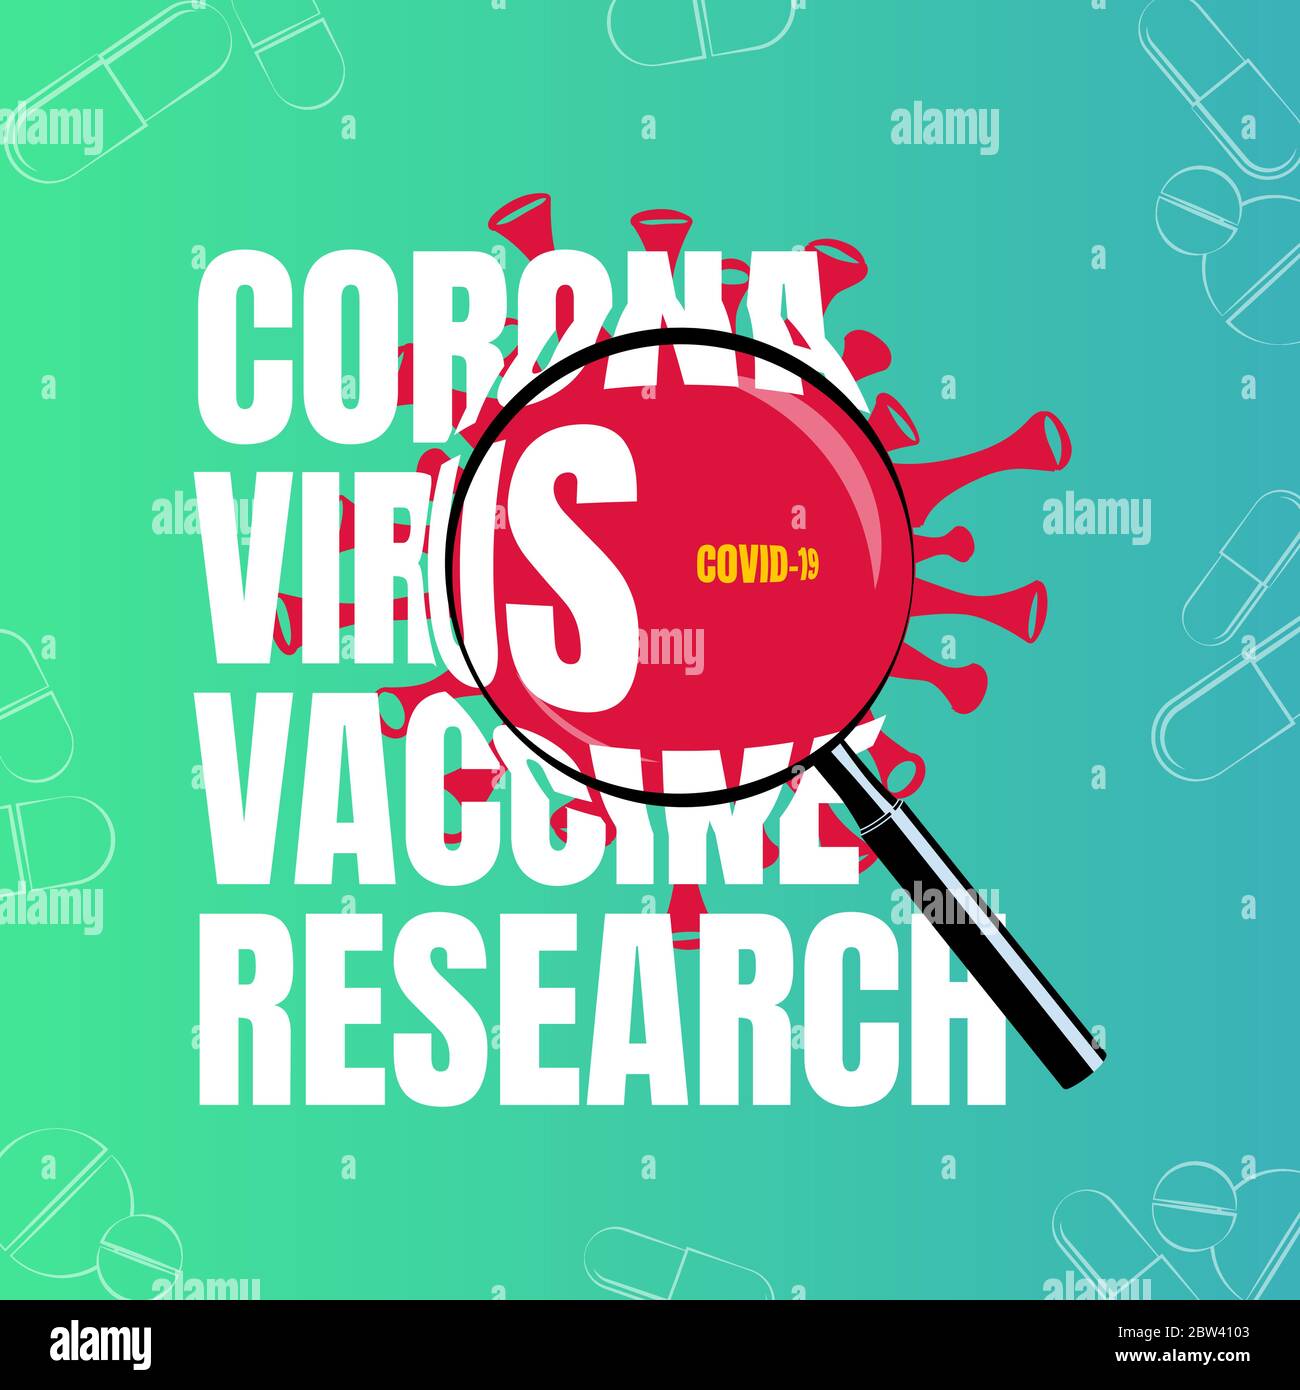 Corona Virus Impfstoff Forschung Illustration Konzept mit Lupe Text-Effekt isoliert auf hellen Gradienten Hintergrund. Stock Vektor